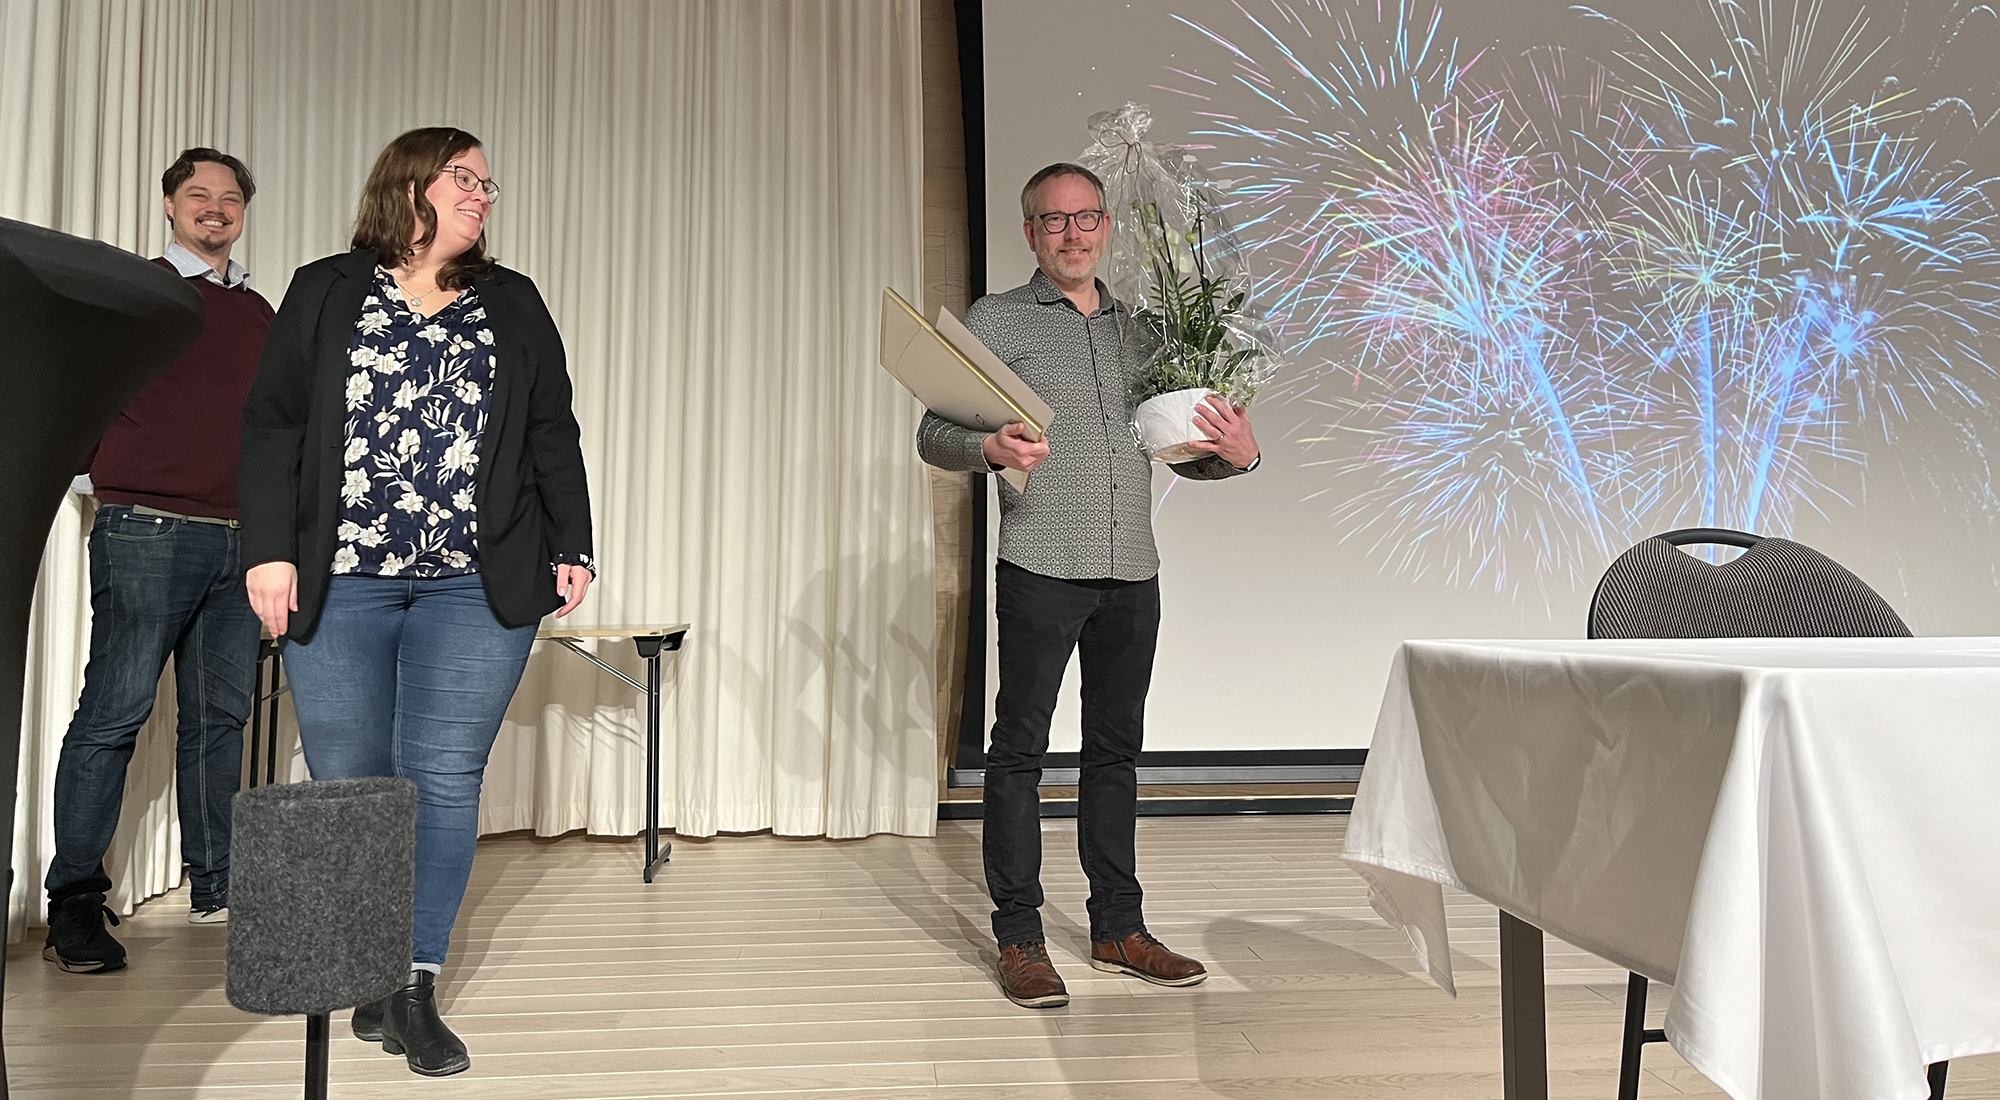 Mats Börjesson står med blomma och diplom framför en bild med fyrverkerier. I vänstra kanten syns politikerna.